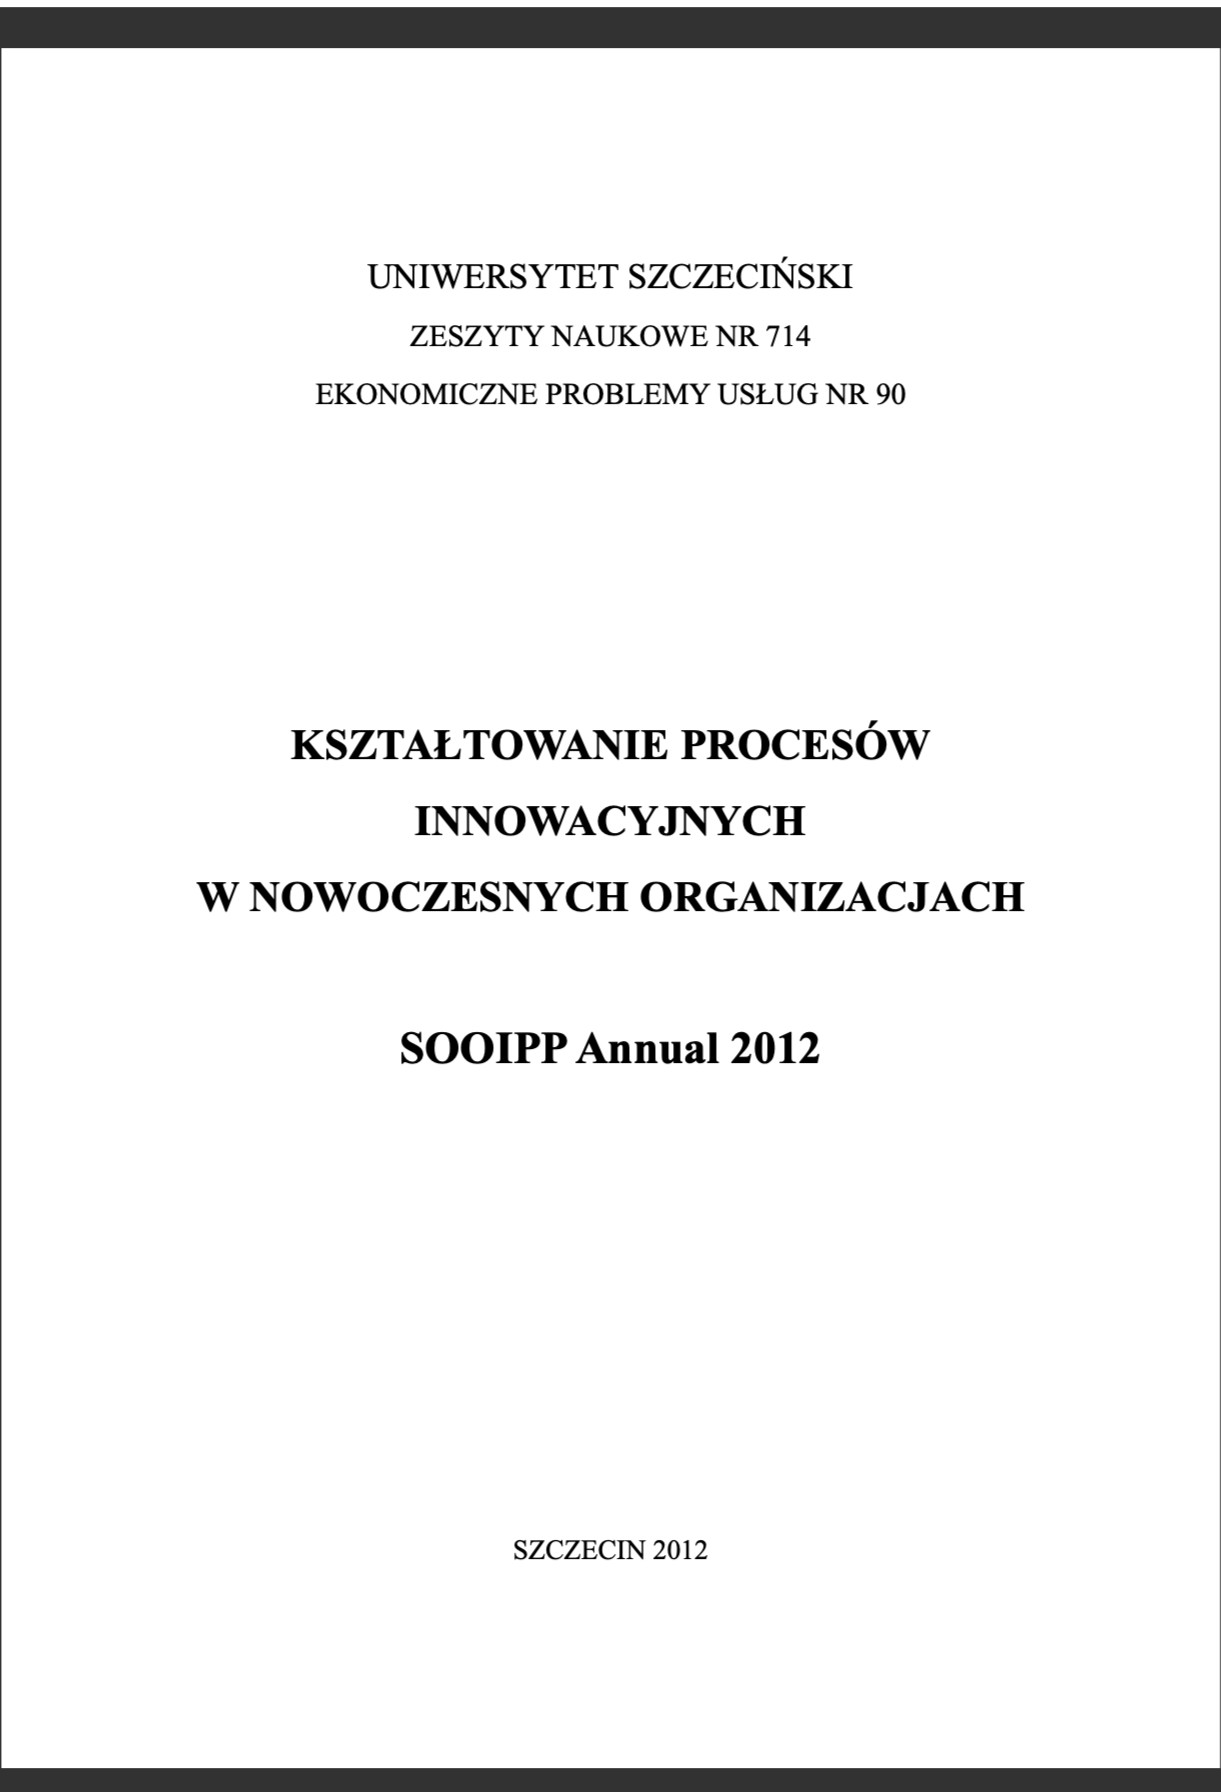 Kształtowanie procesów innowacyjnych w nowoczesnych organizacjach SOOIPP Annual 2012